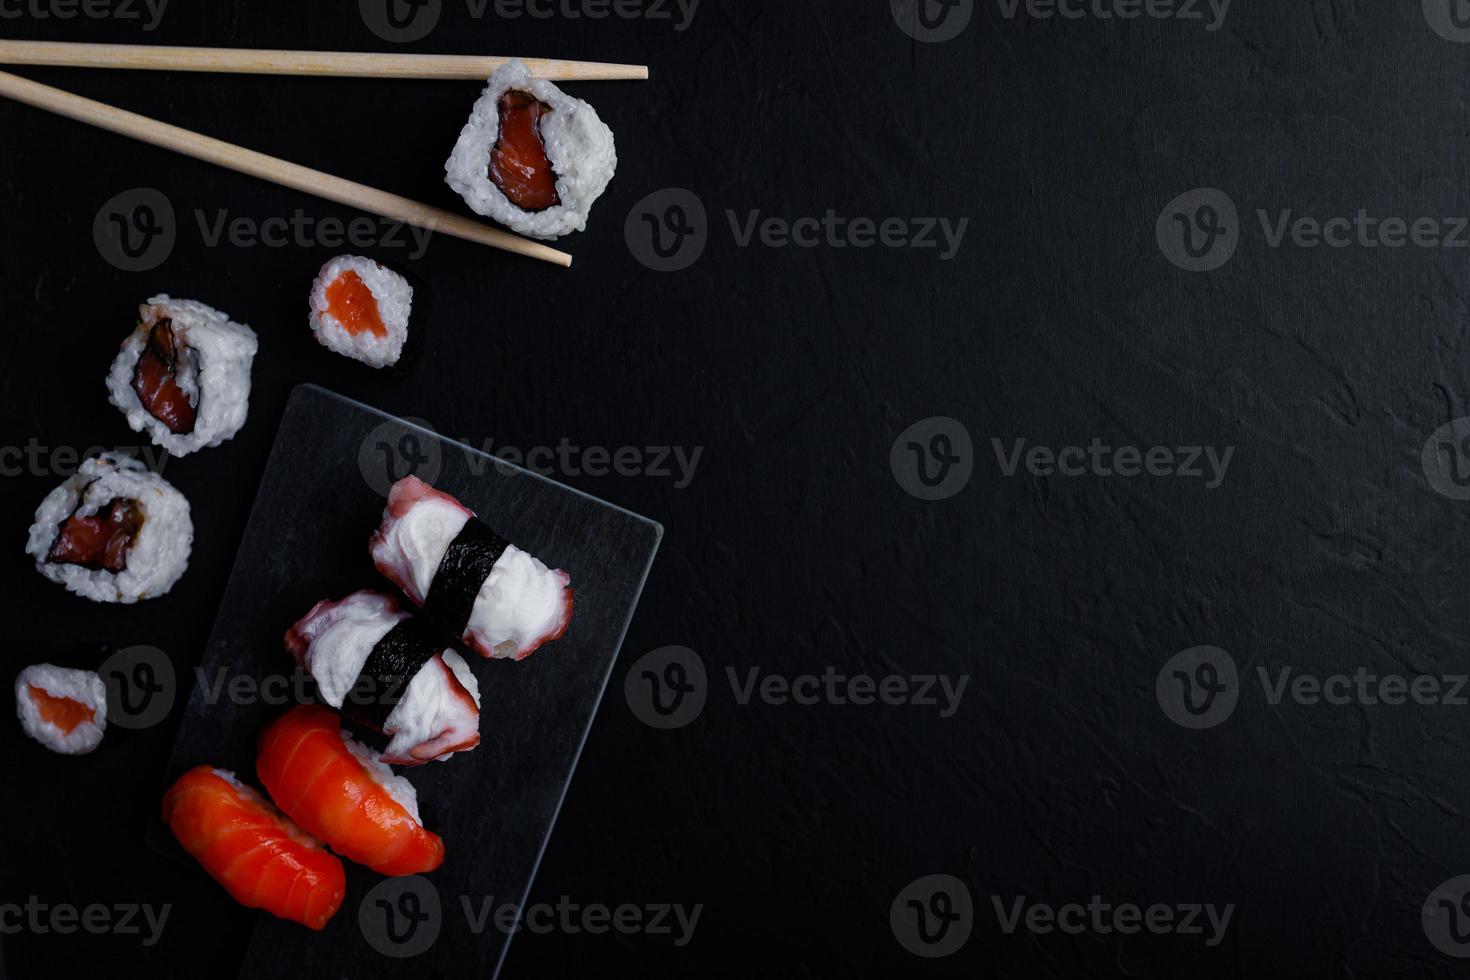 nourriture japonaise de sushi. maki ands rolls au thon, saumon, crevette, crabe et avocat. vue de dessus de sushis assortis. photo